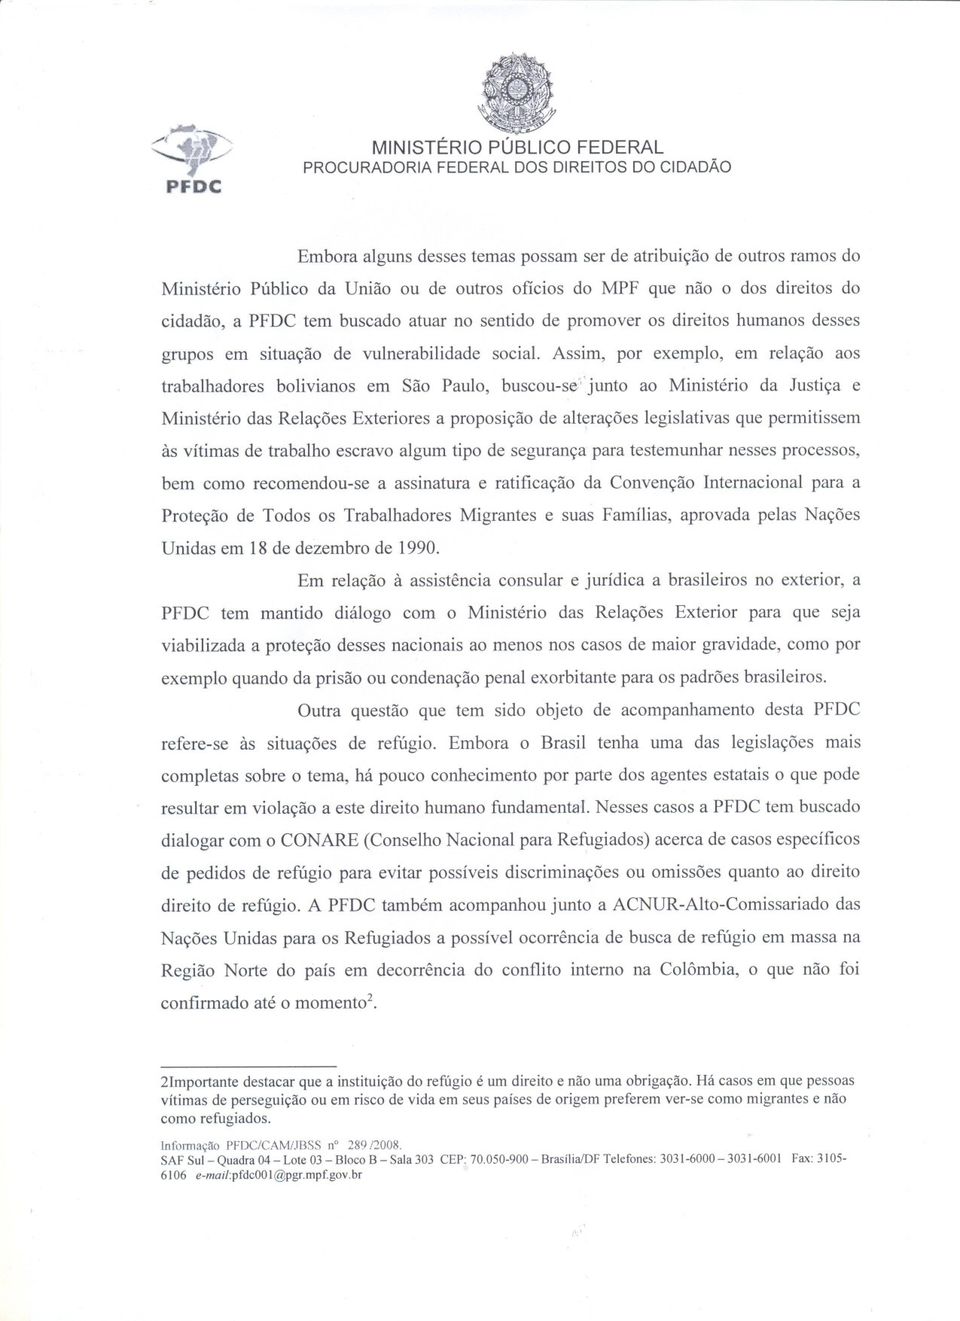 Assim, por exemplo, em relação aos trabalhadores bolivianos em São Paulo, buscou-se;""junto ao Ministério da Justiça e Ministério das Relações Exteriores a proposição de alterações \ legislativas que